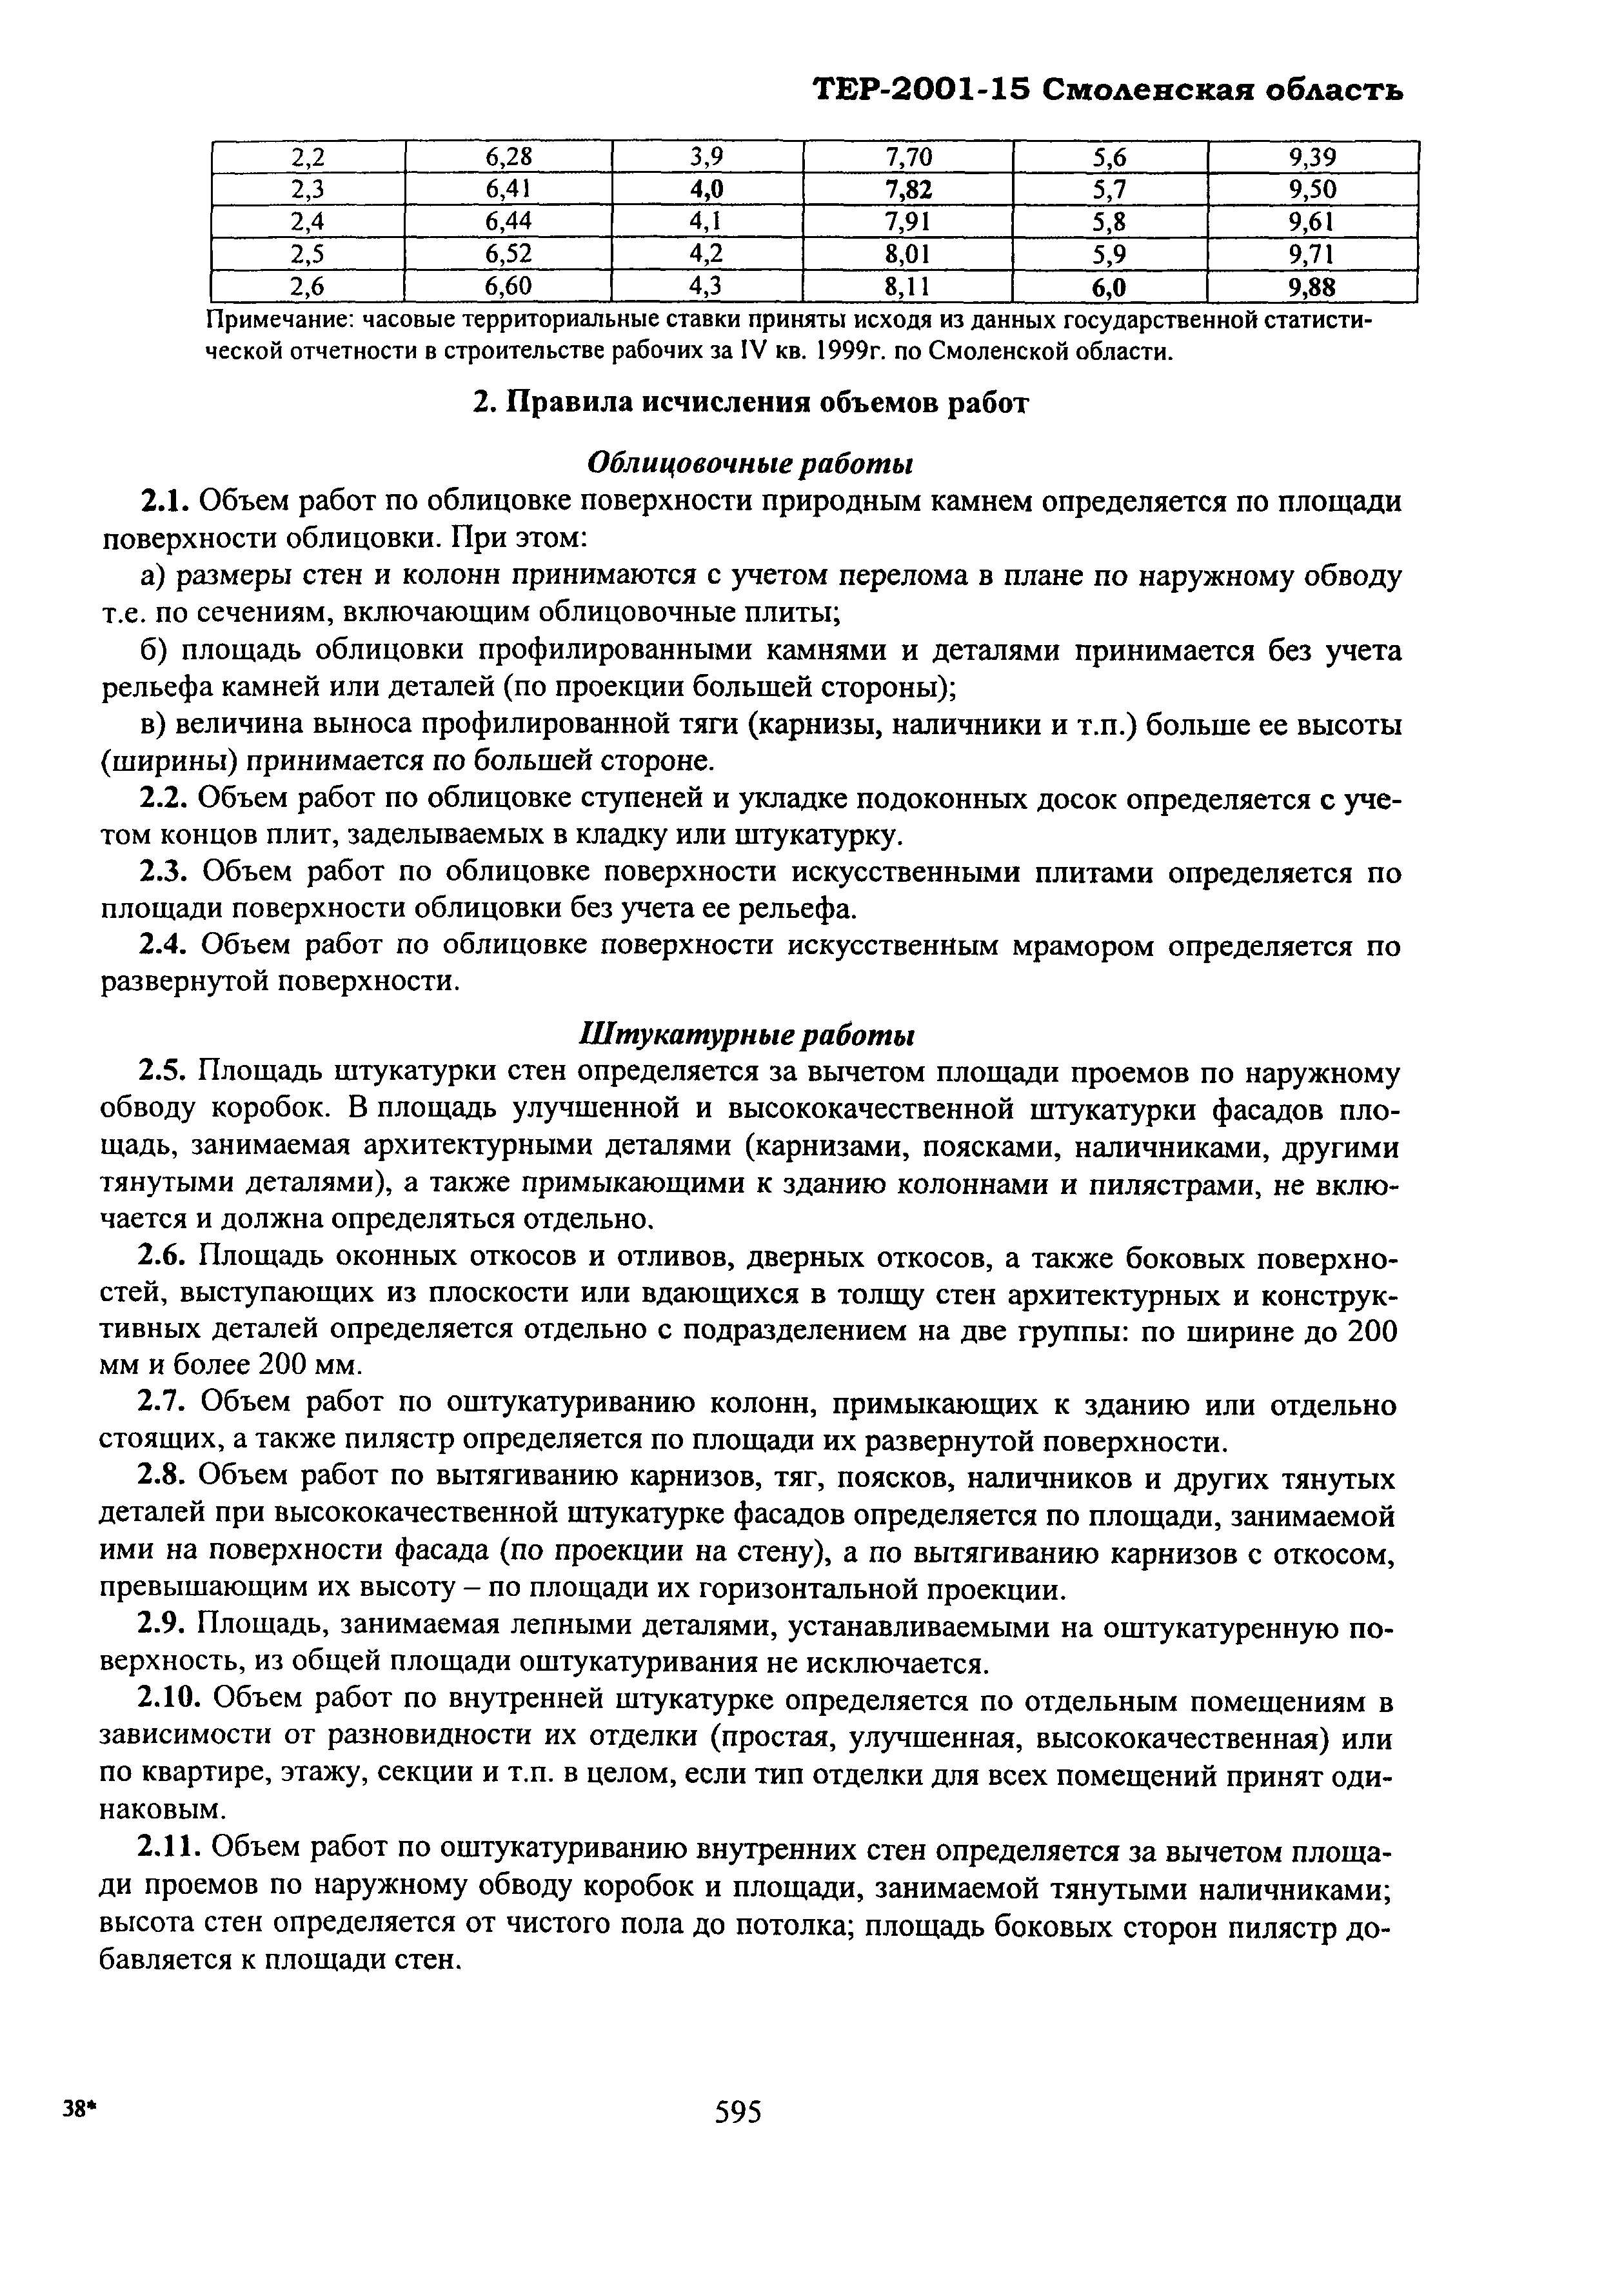 ТЕР Смоленской обл. 2001-15